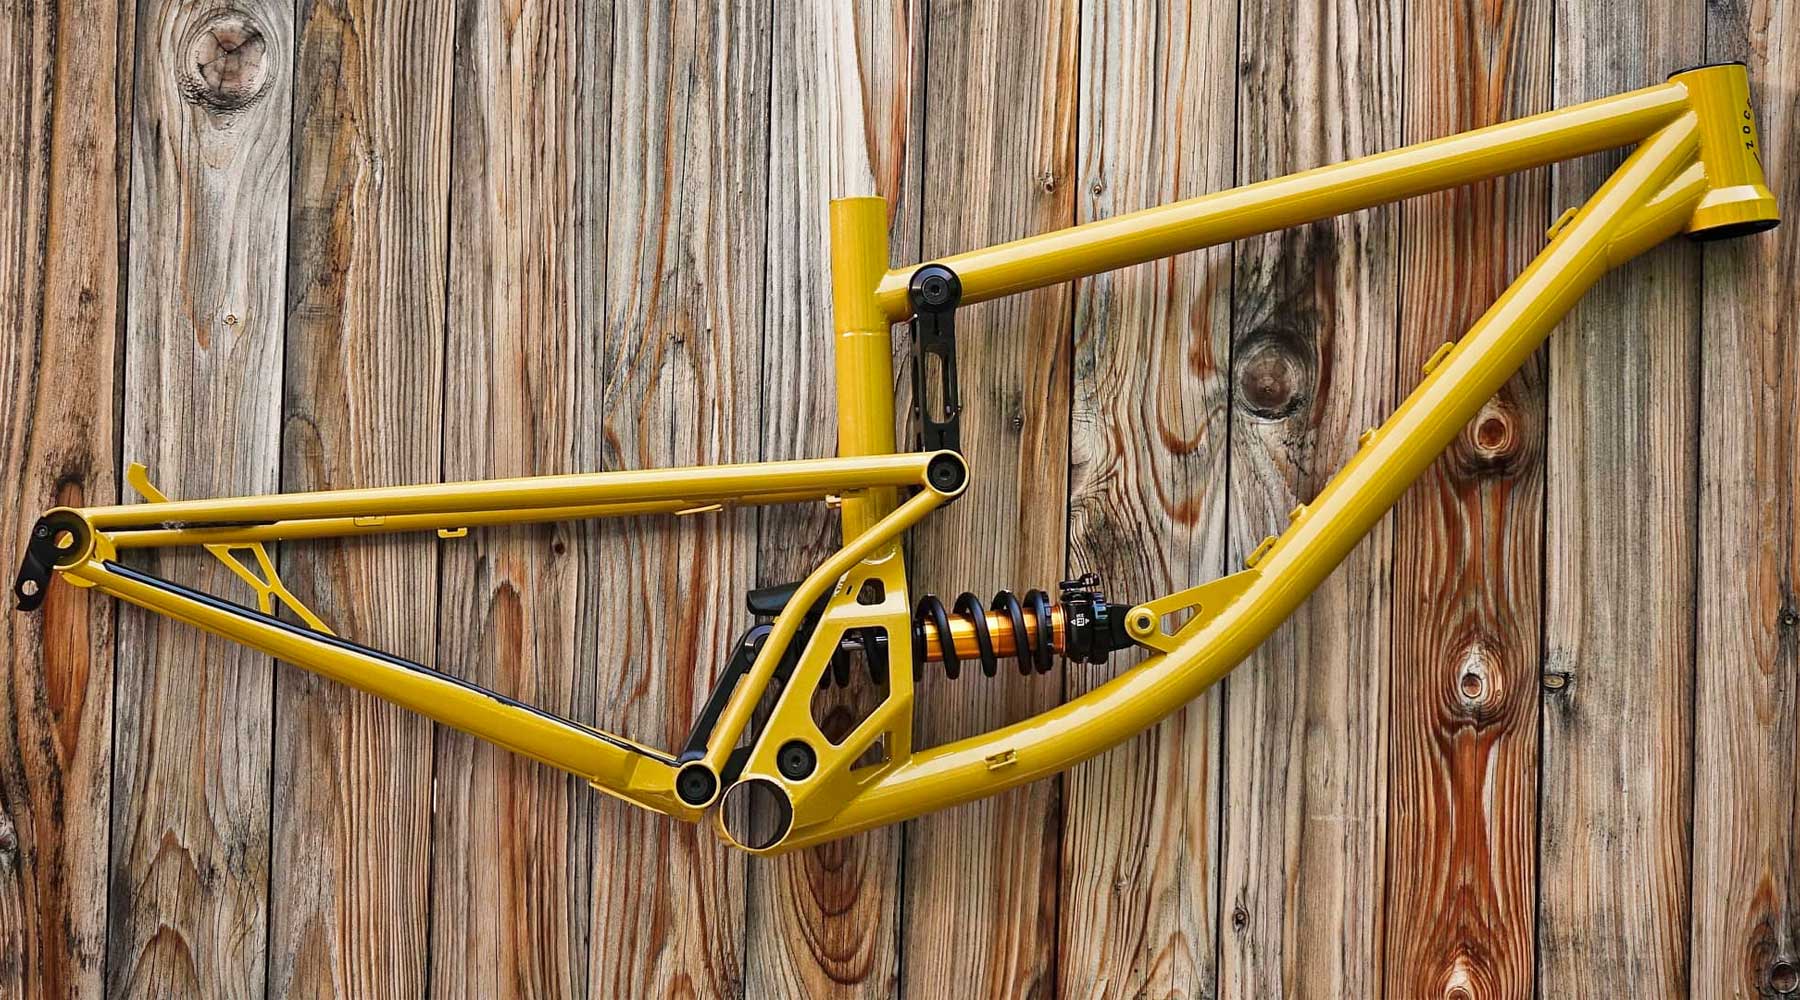 2021 Zoceli Naosm steel full-suspension enduro bike, 160mm travel handmade 29er all-mountain bike, detail